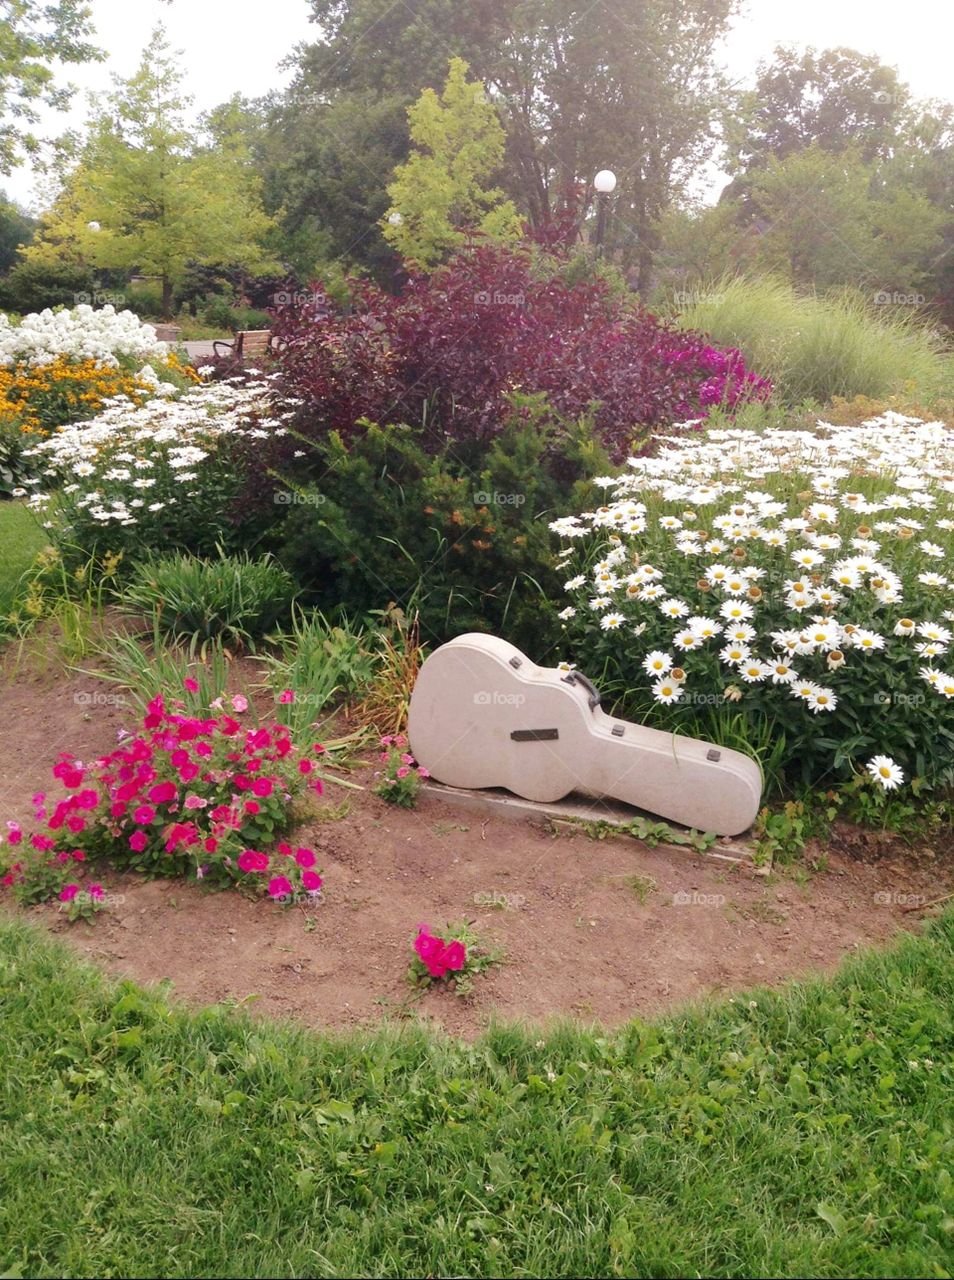 Guitar sculpture in garden